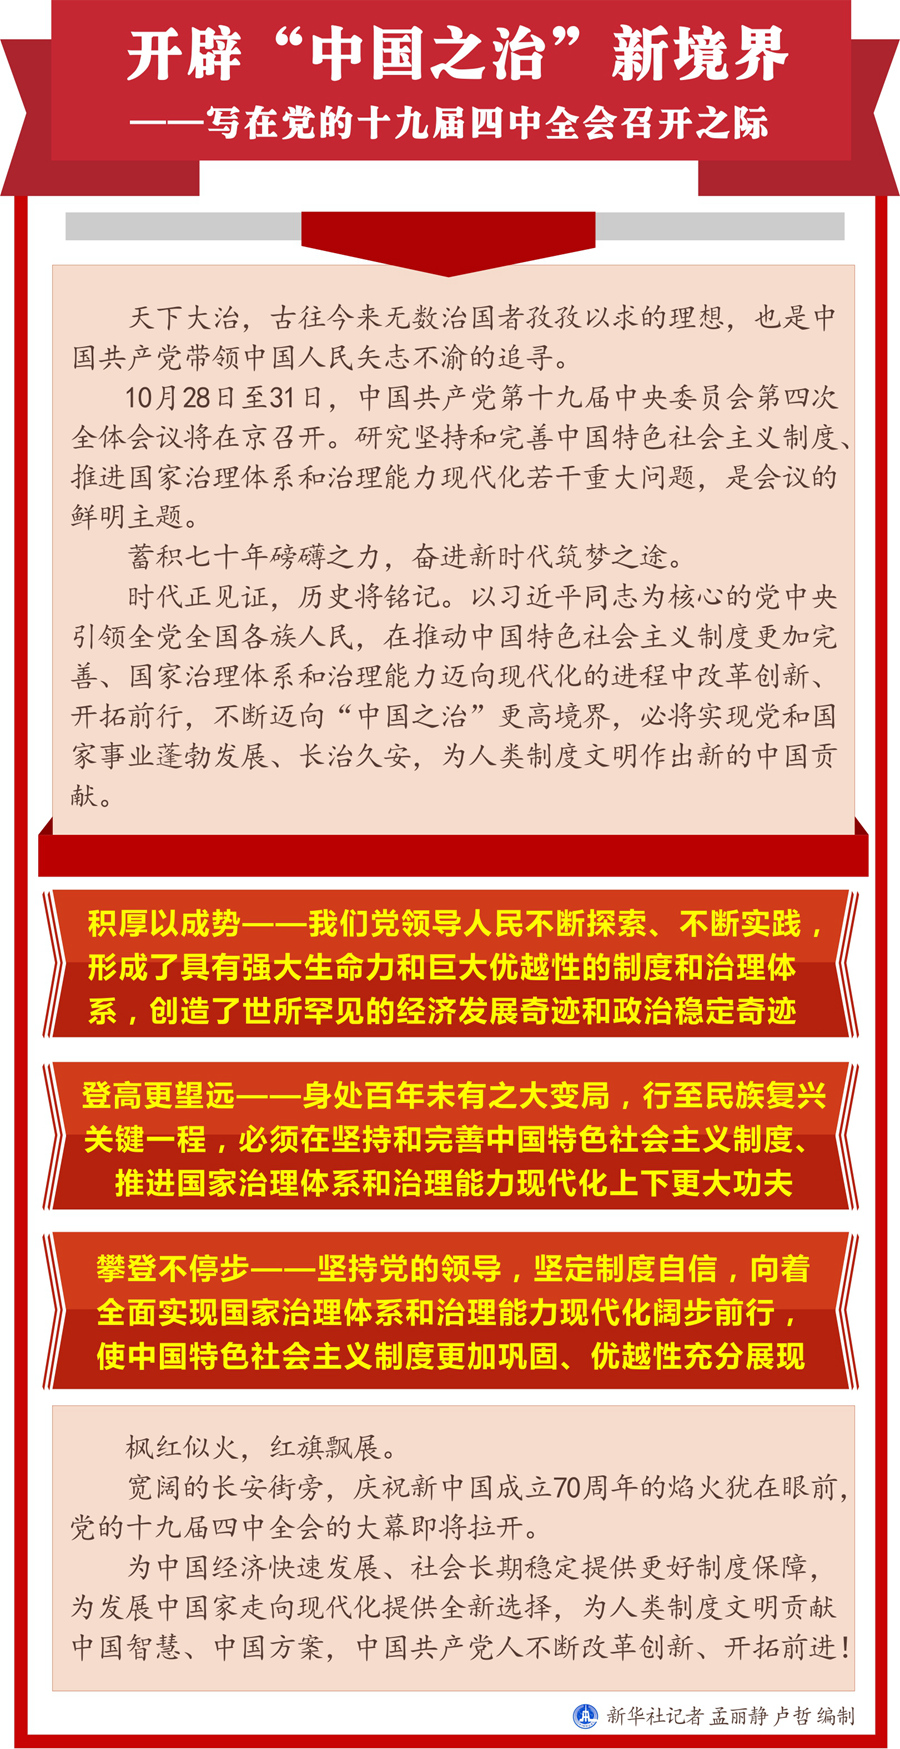 开辟“中国之治”新境界——写在党的十九届四中全会召开之际